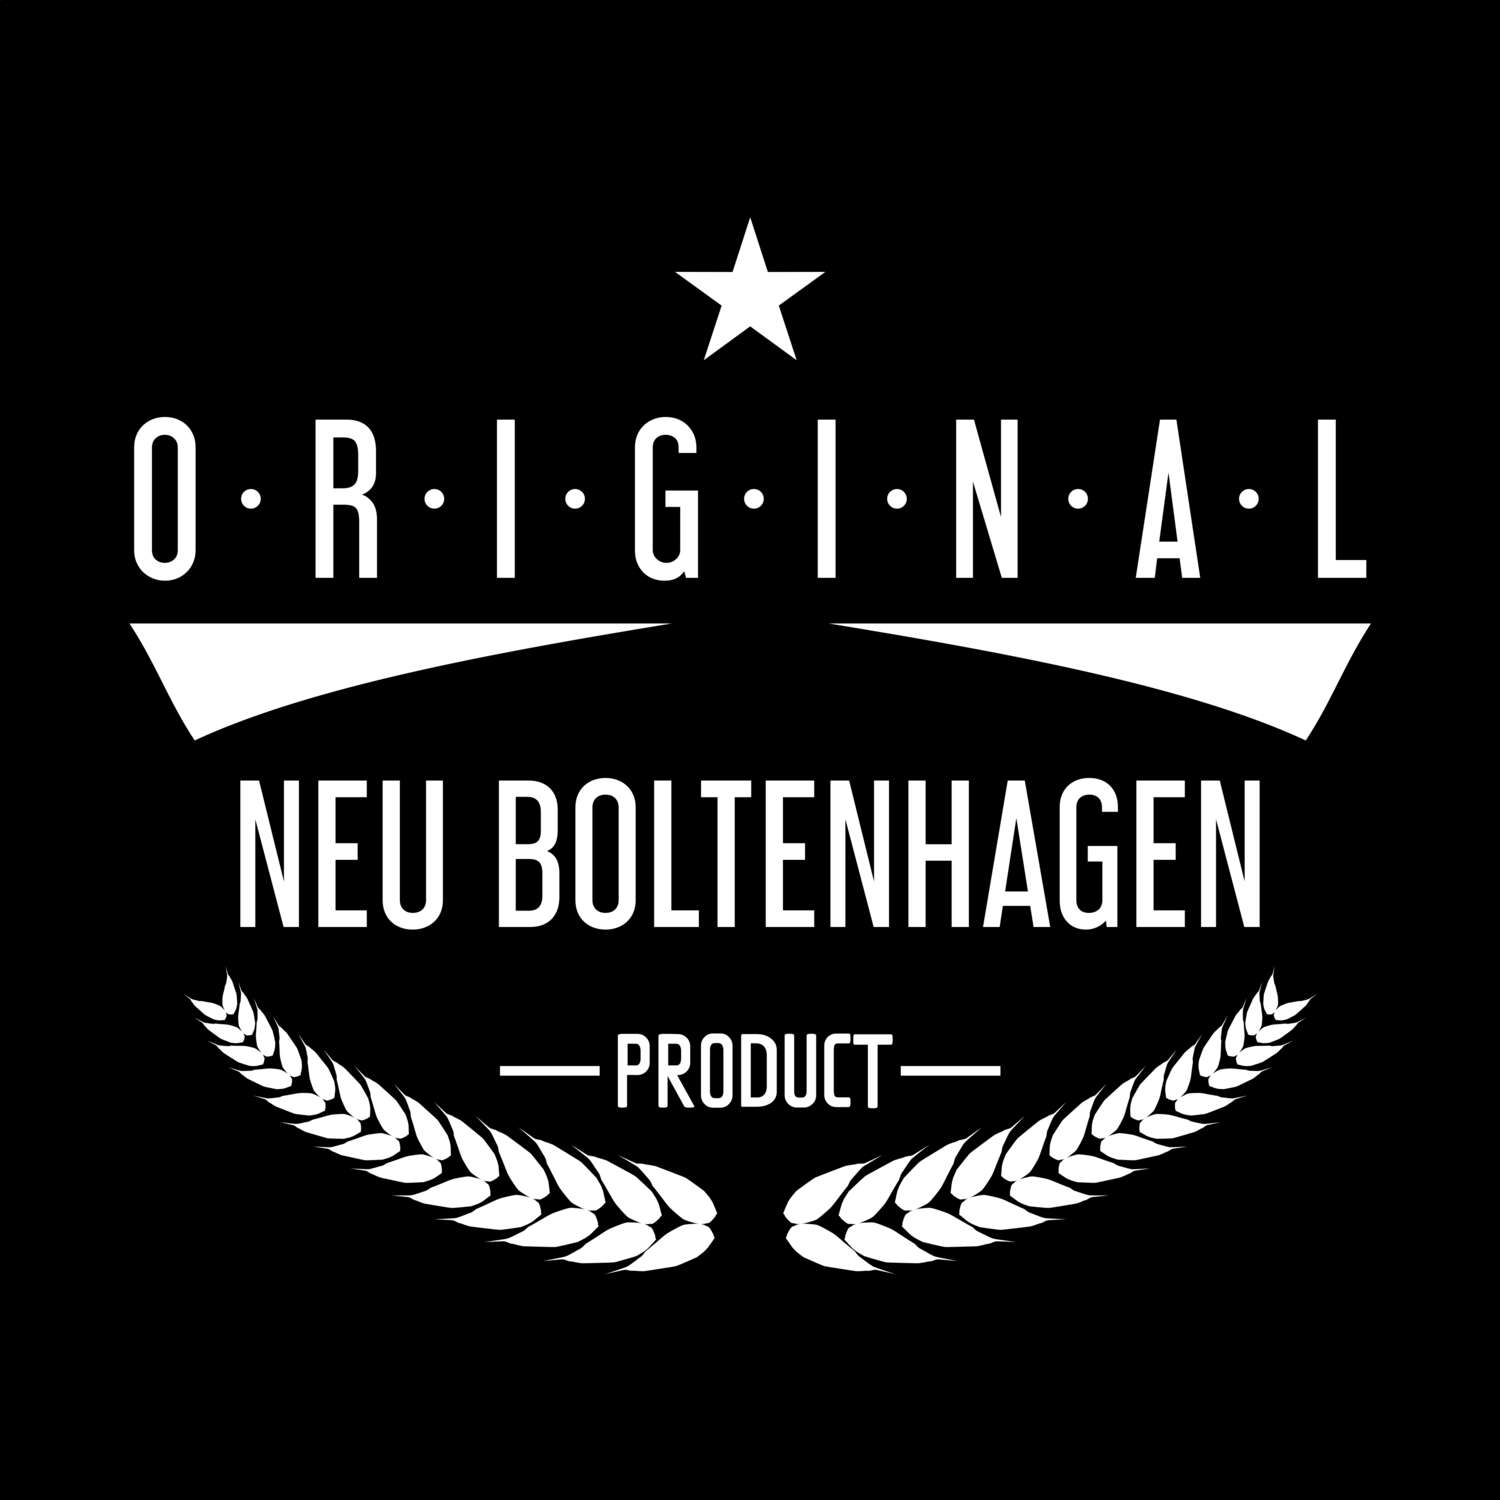 Neu Boltenhagen T-Shirt »Original Product«